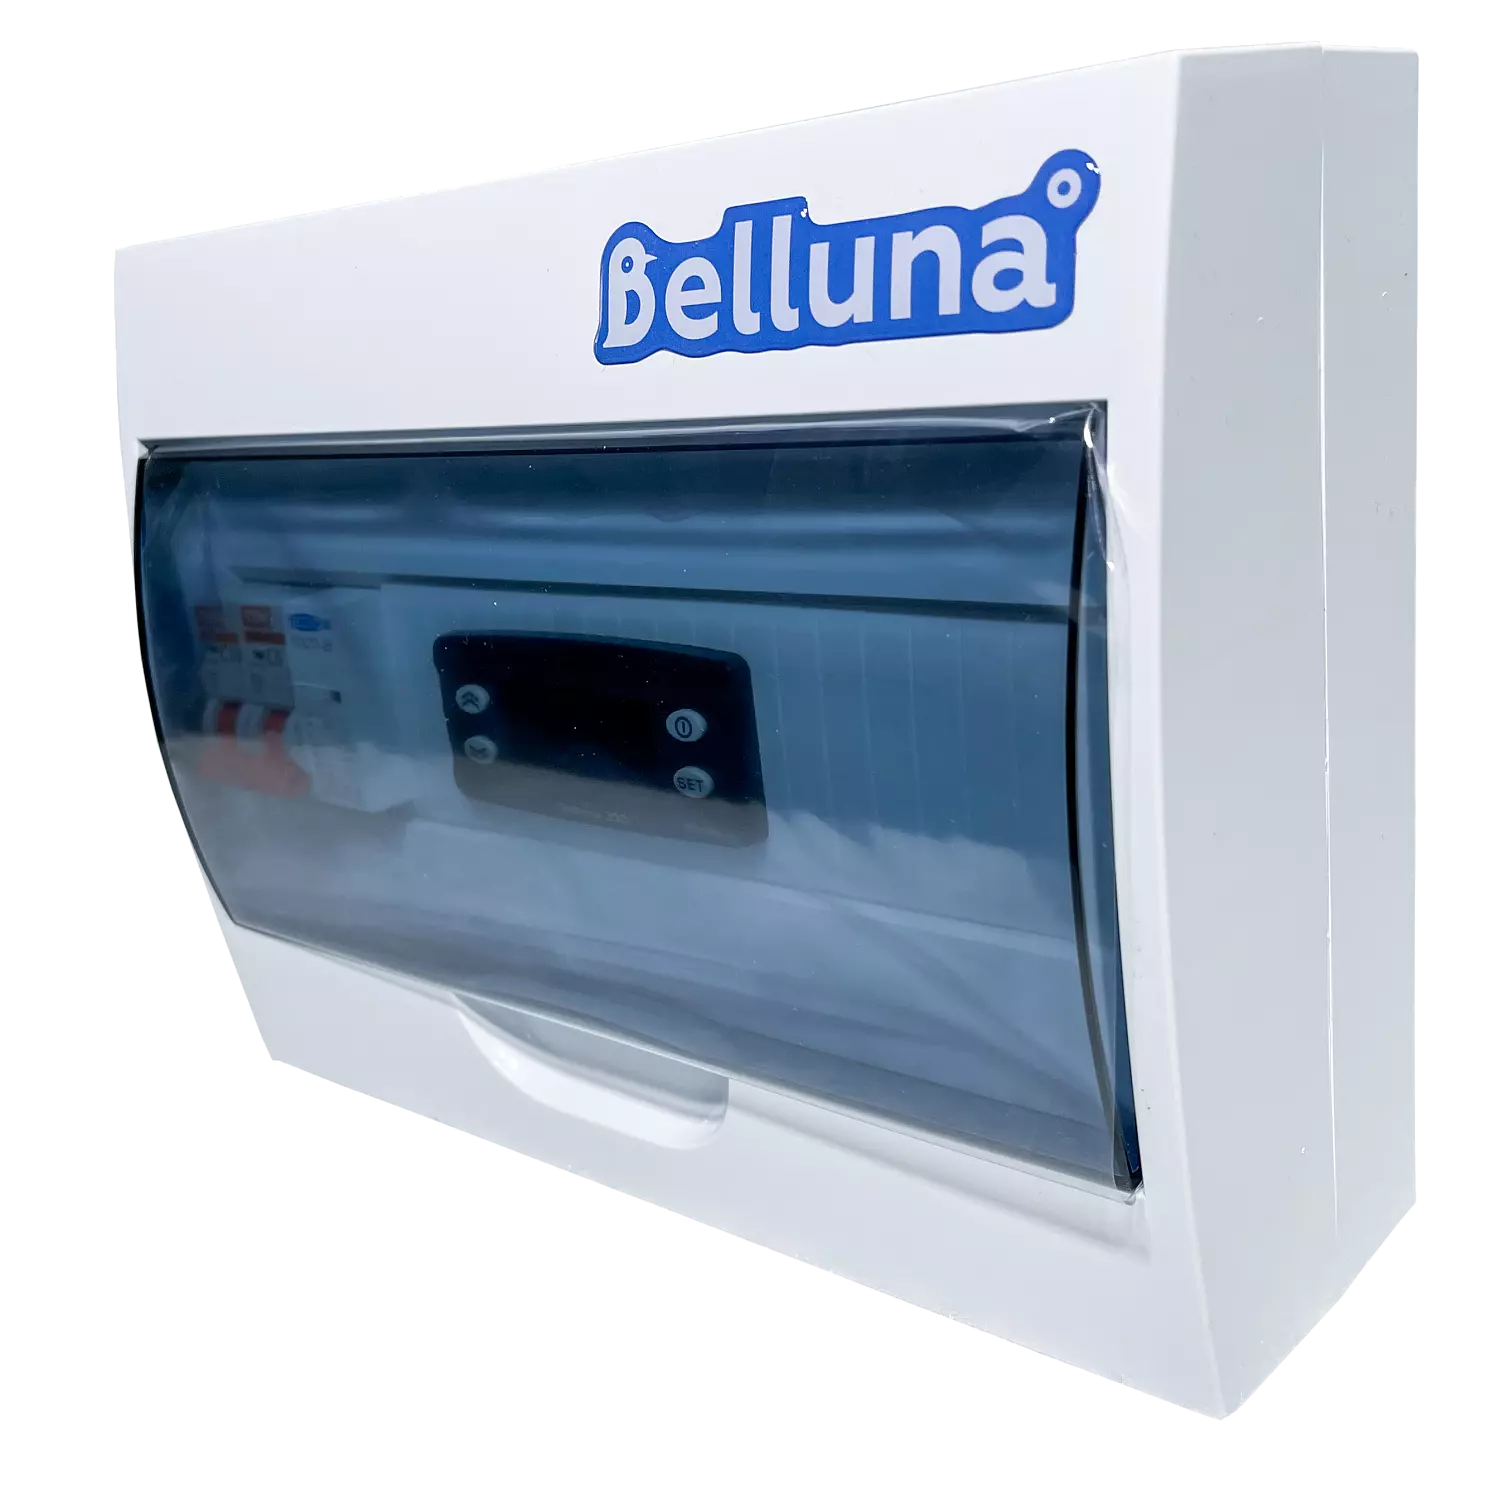 сплит-система Belluna S342 Омск